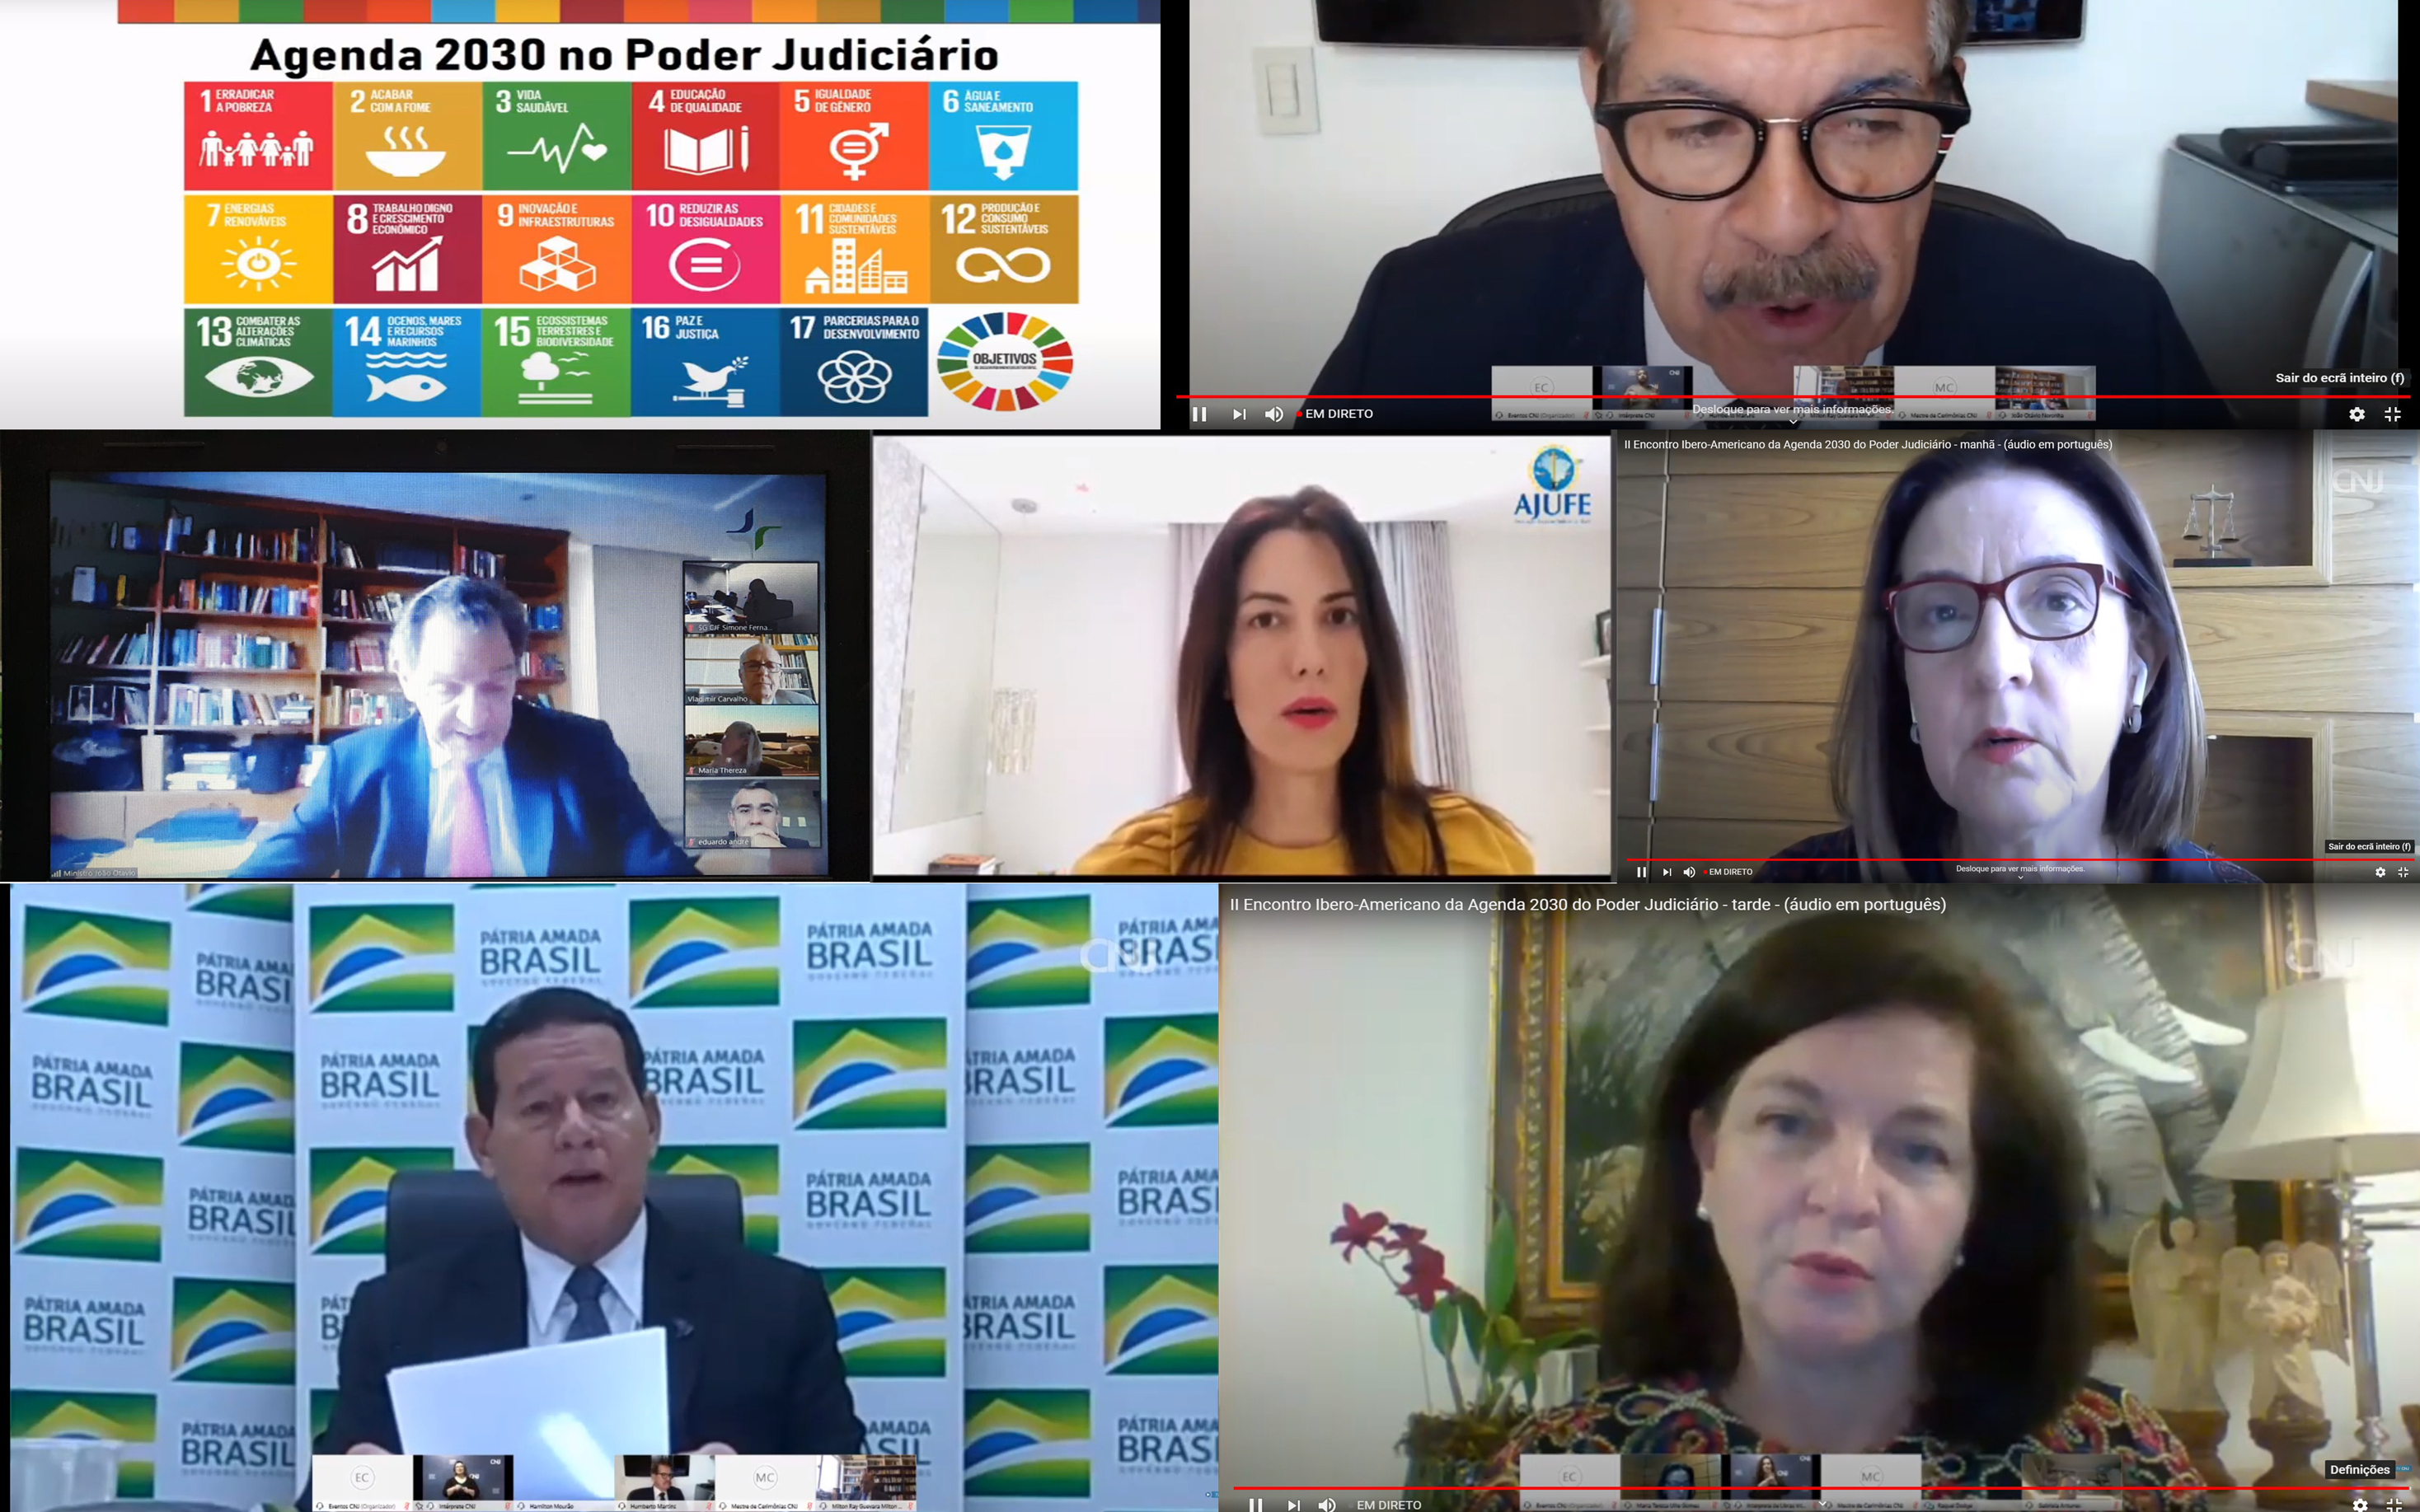 INSTITUCIONAL: CNJ e ONU instituem o Selo Agenda 2030 no Poder Judiciário brasileiro